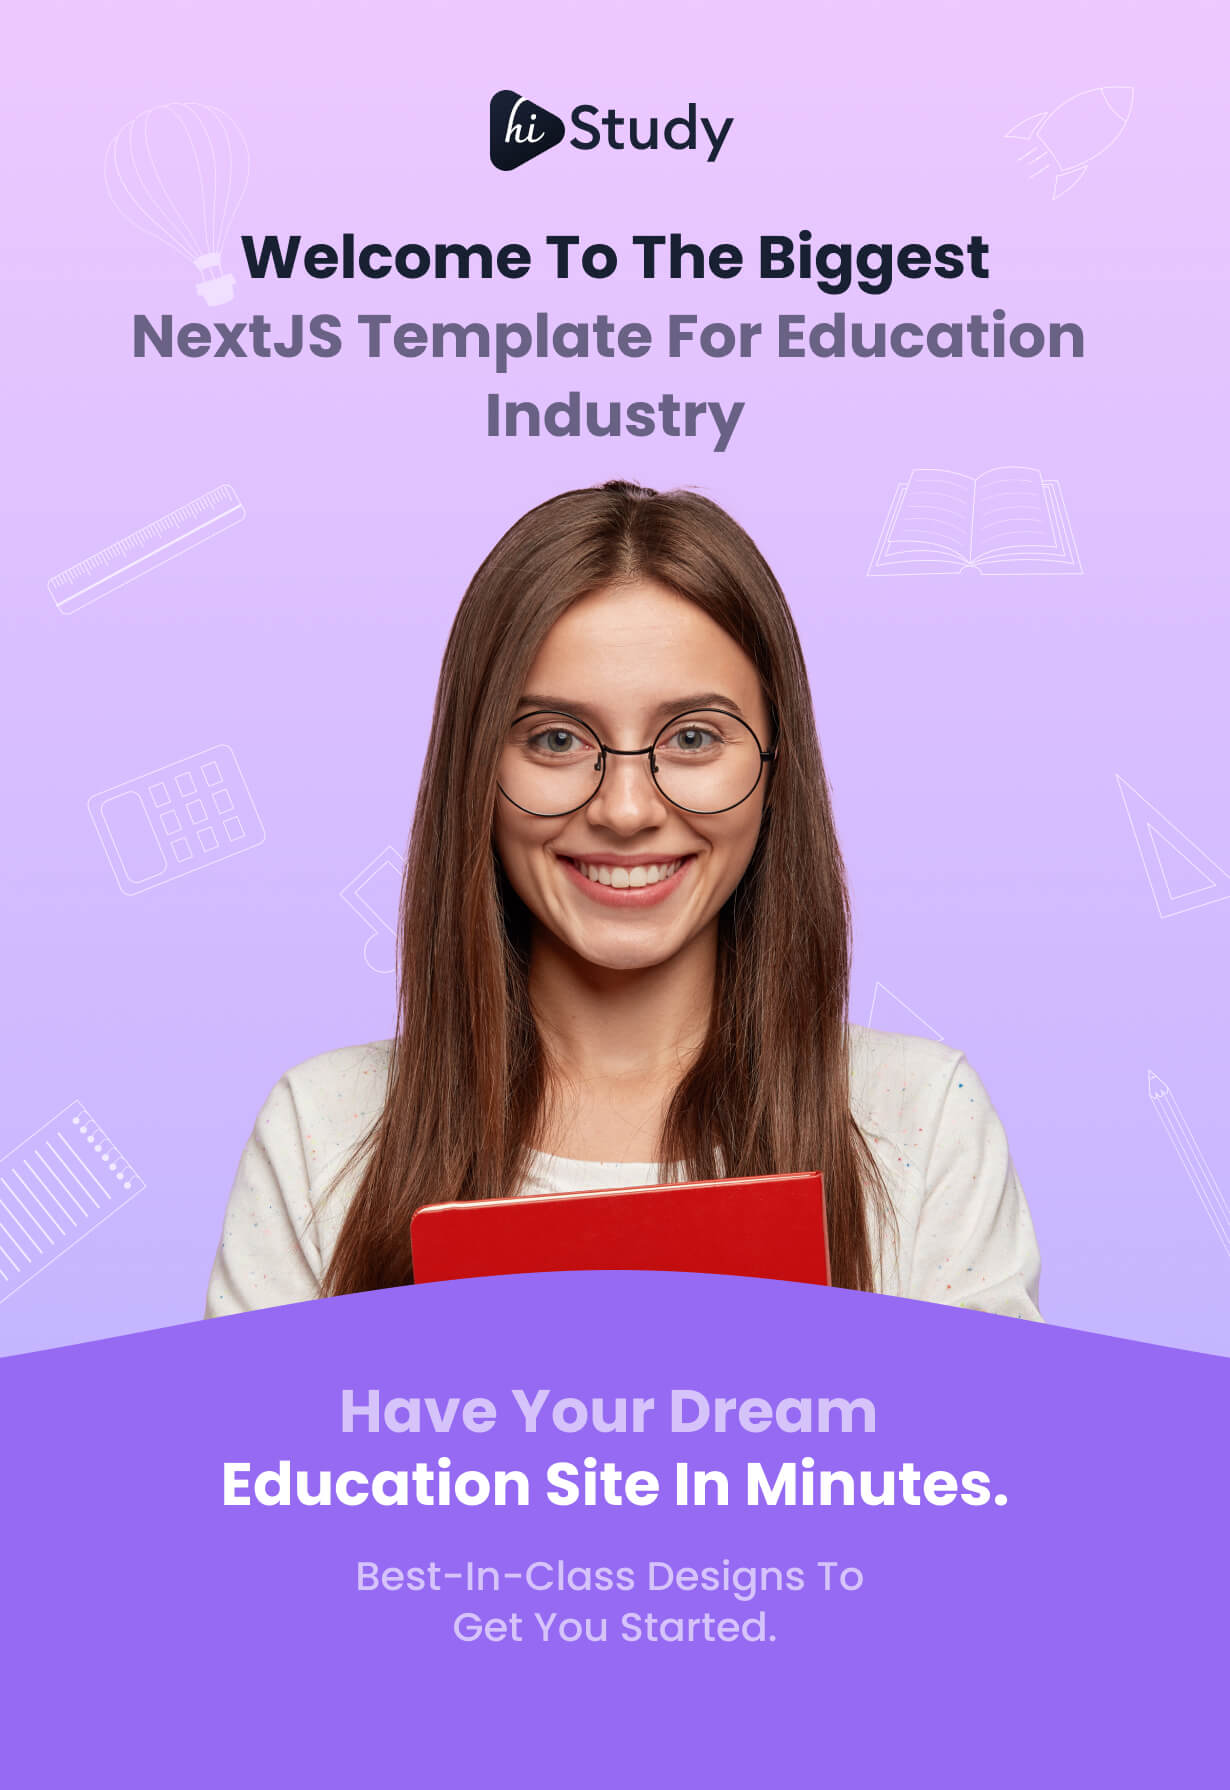 HiStudy - Online Courses & Education NextJS Template - 5